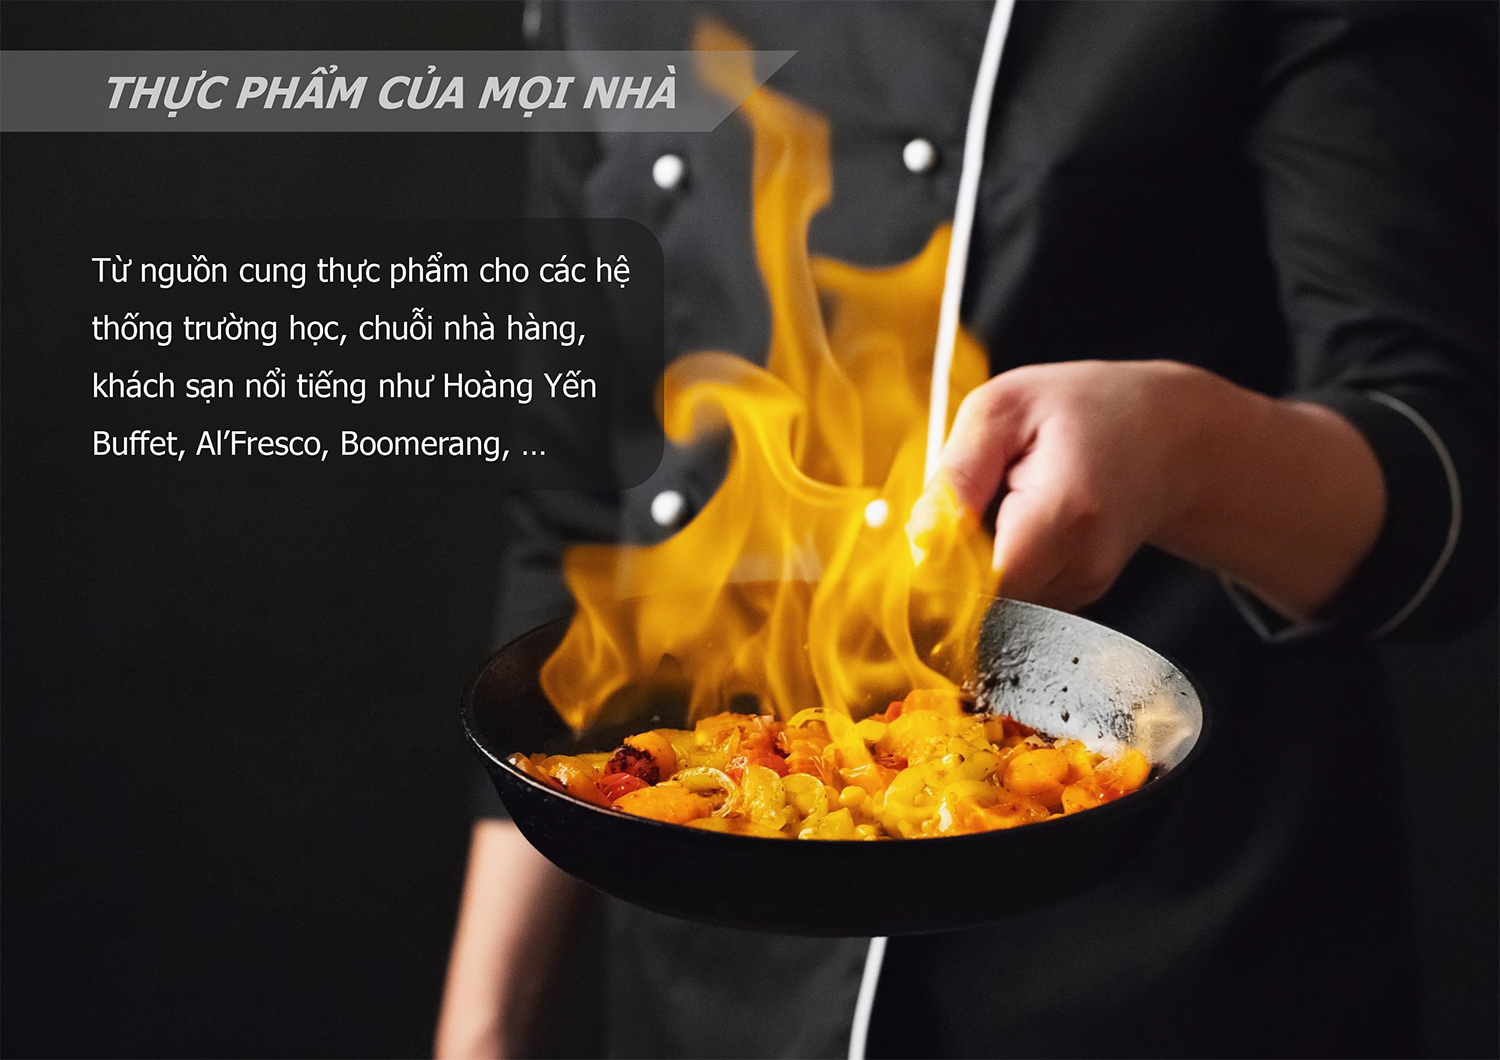 HO SO NHAN LUC - NGUYEN HA FOOD PROFILE-1